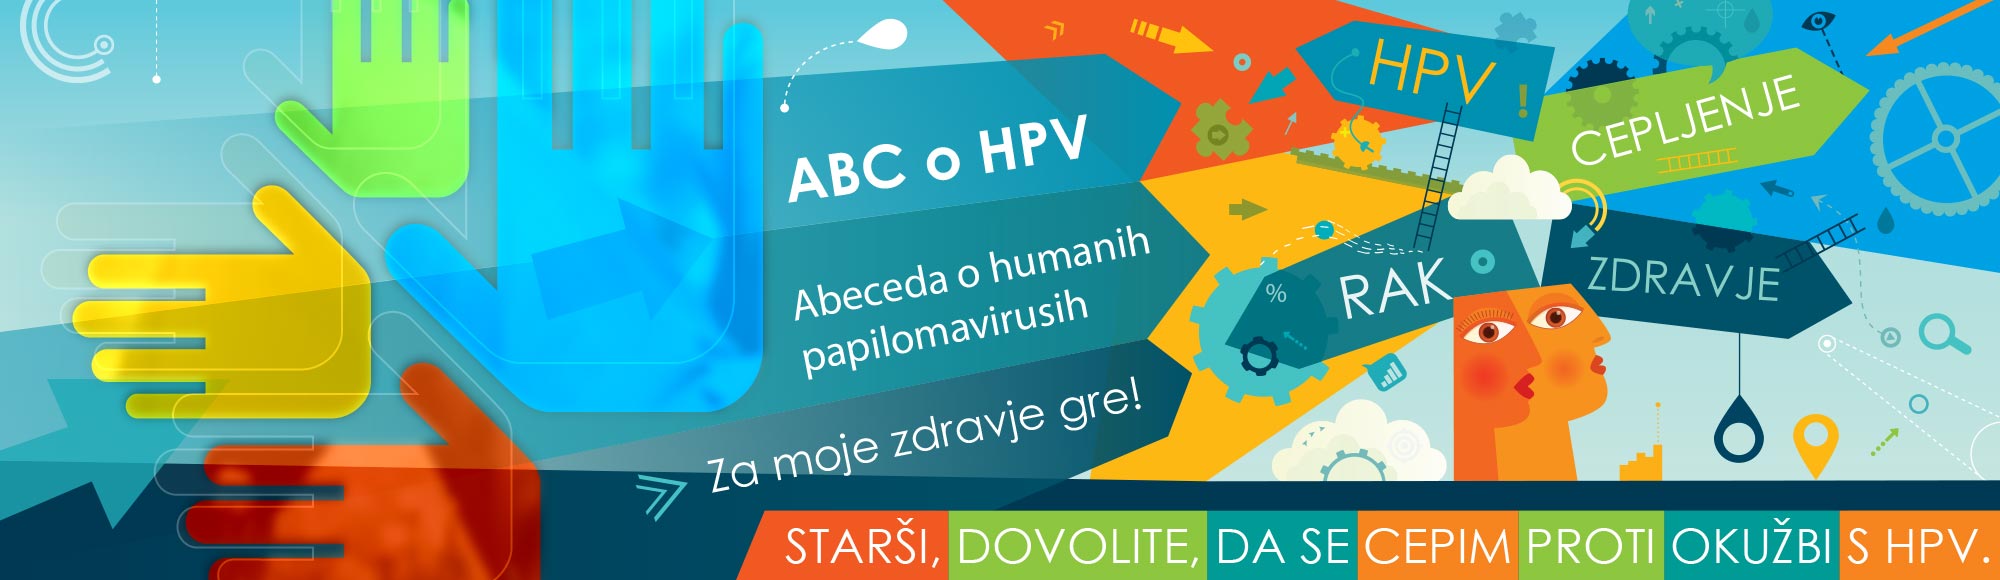 Zveza slovenskih društev za boj proti raku